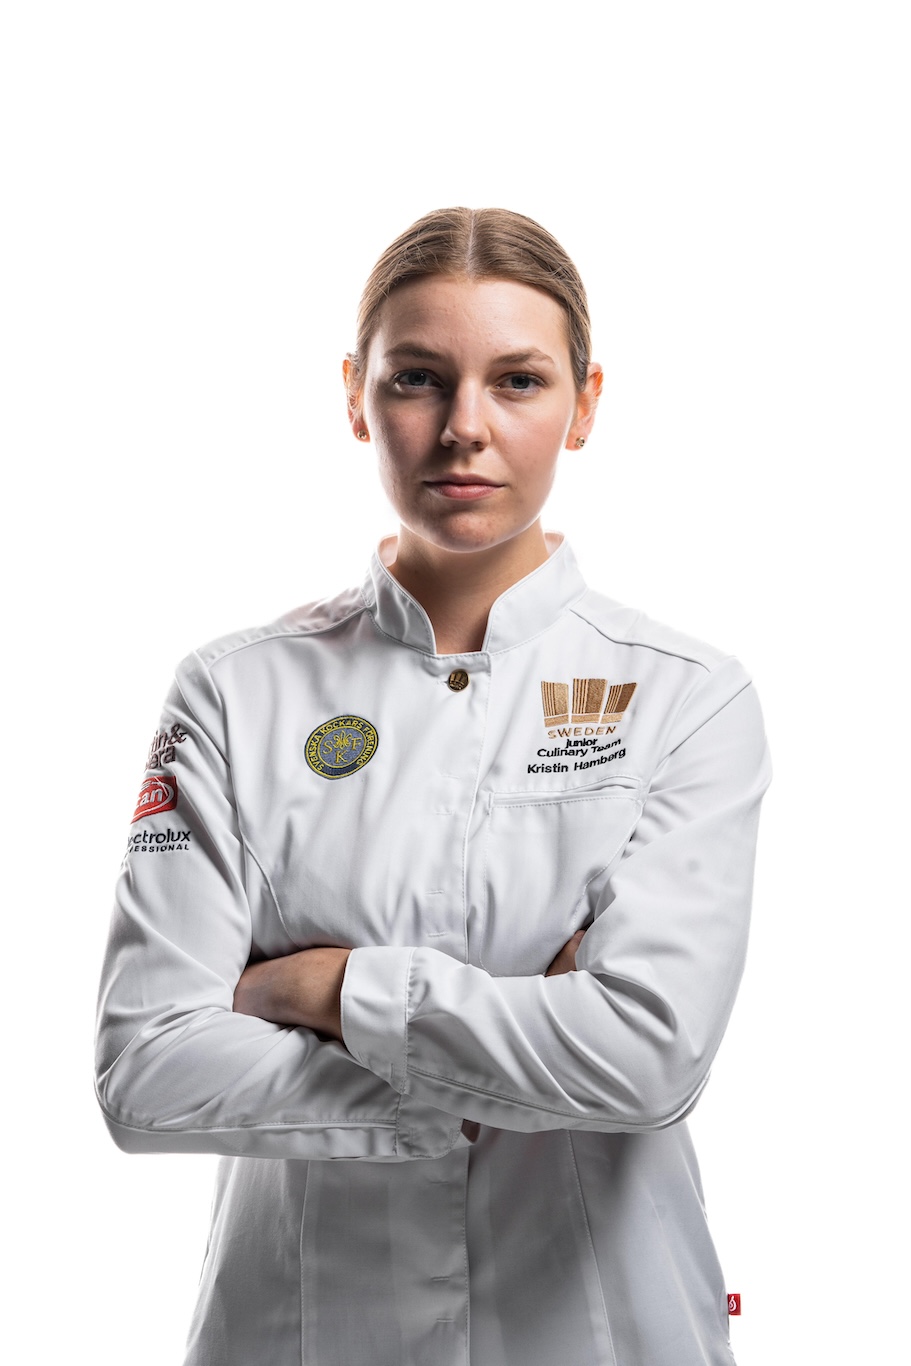 Kristin Hambergs reise fra amatørbaker til kulinarisk OL-gullvinner 6